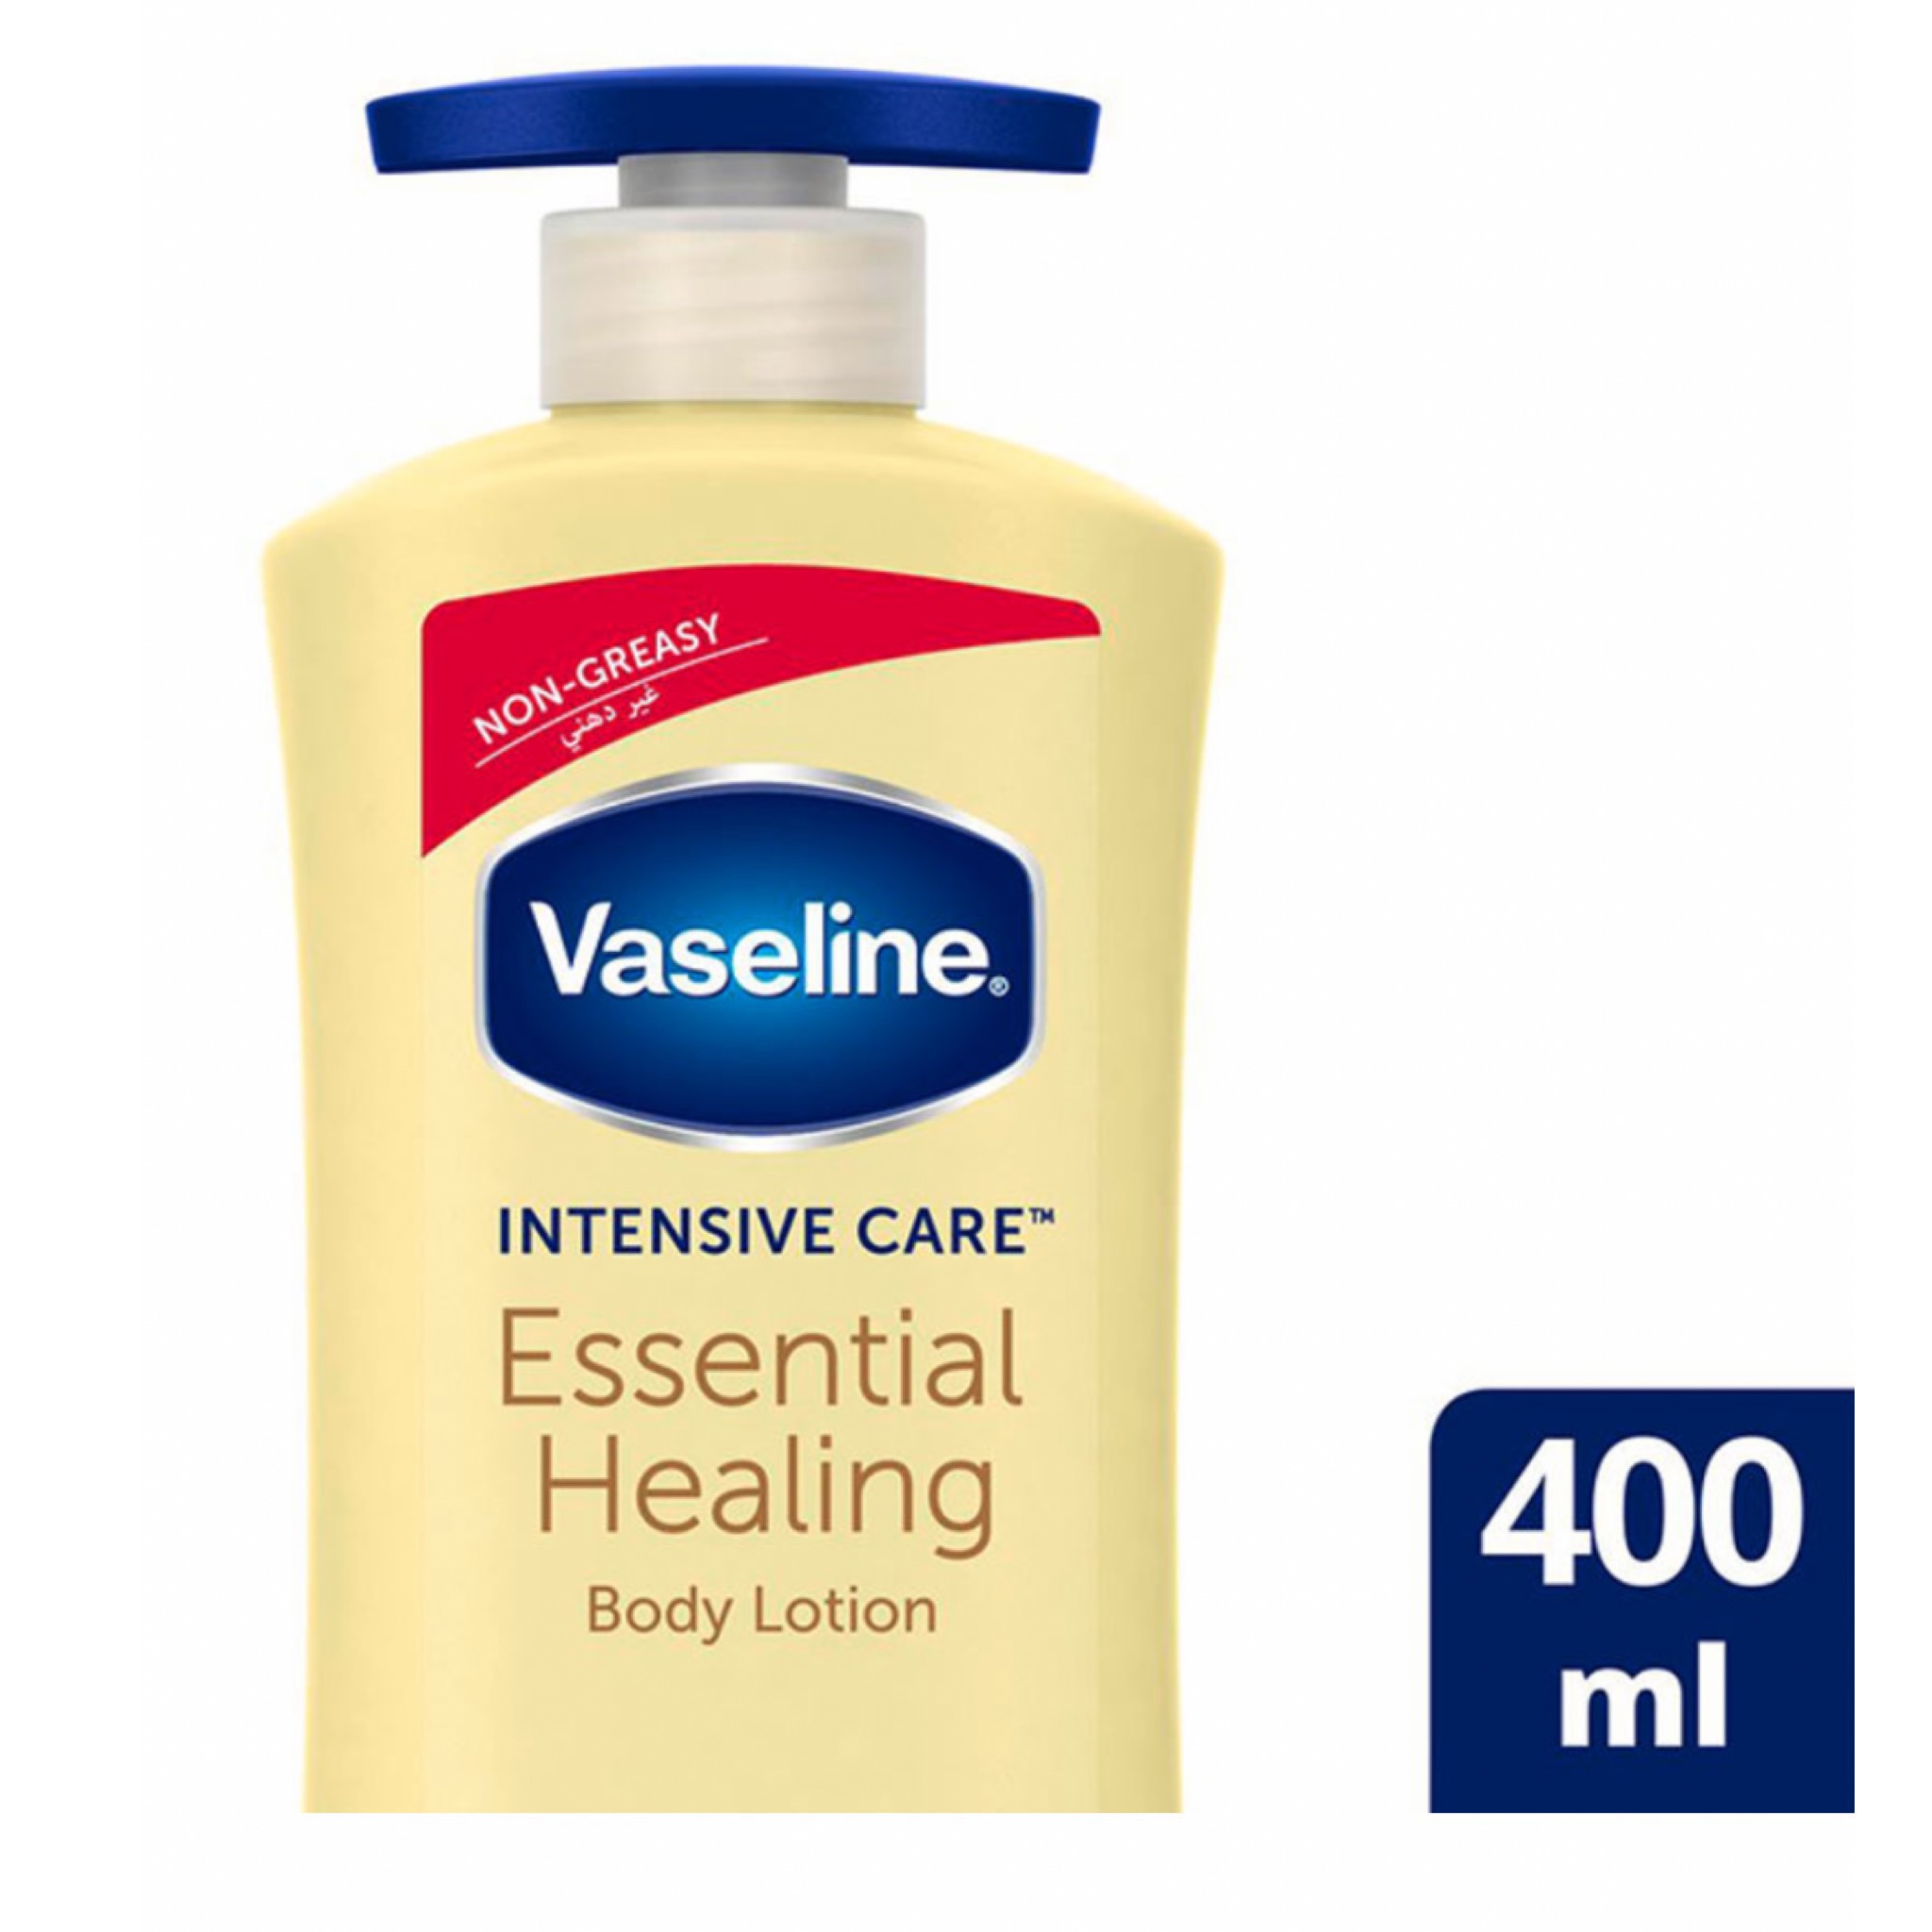 لوشن فازلين الجسم ايسنشيل هيلينج أصفر  العناية الأساسية ( Vaseline ) - 400مل